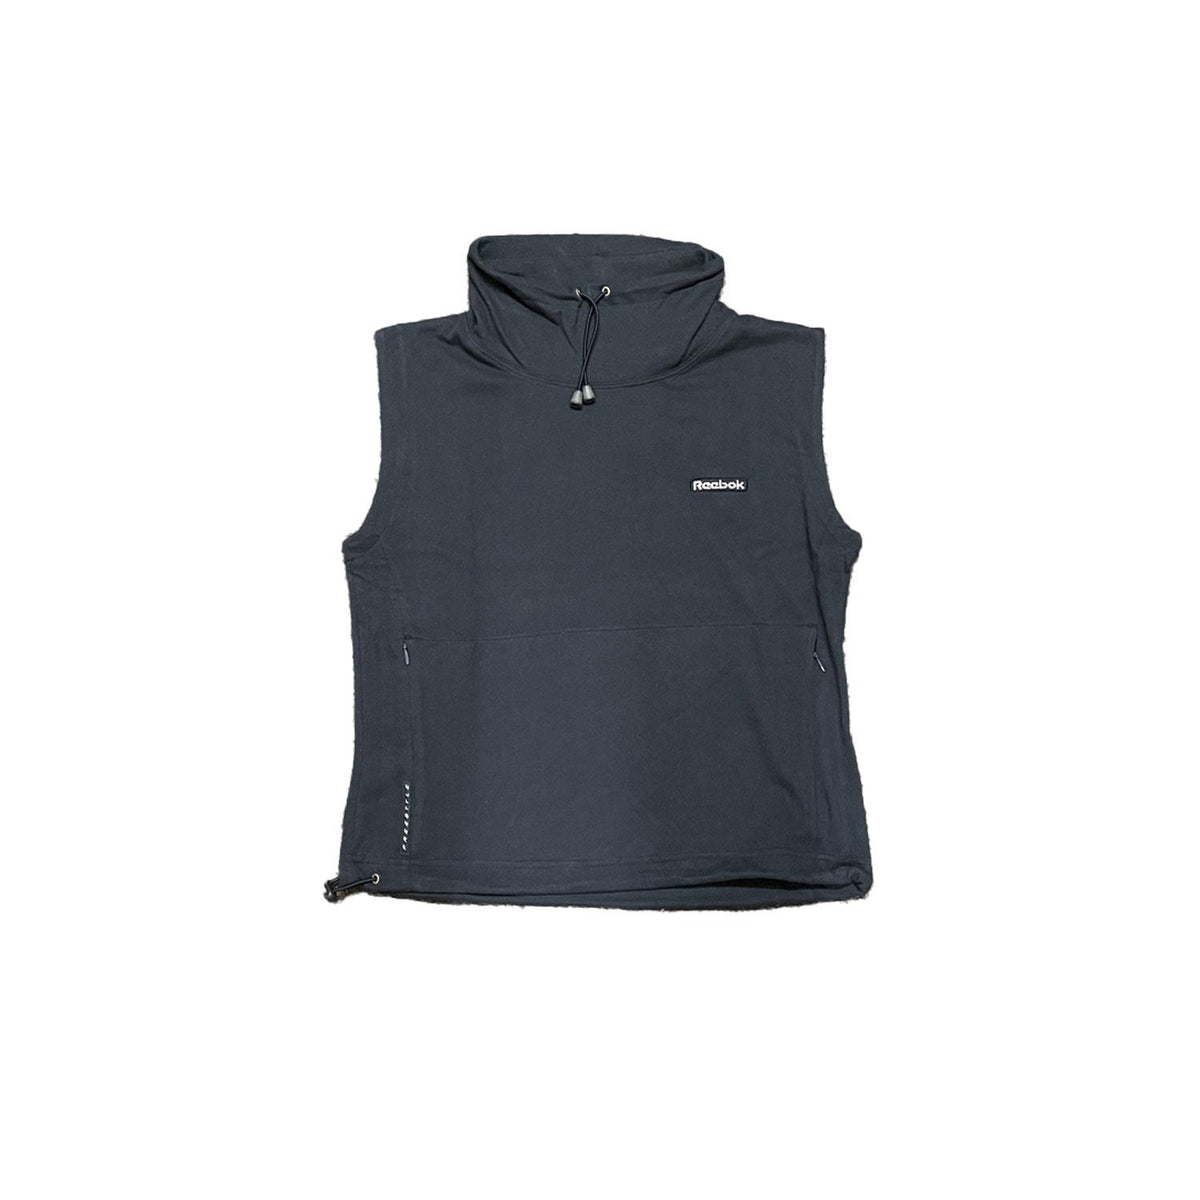 Reebok Original Women's Freestyle Fleece Feel Vest - Navy - Size 12